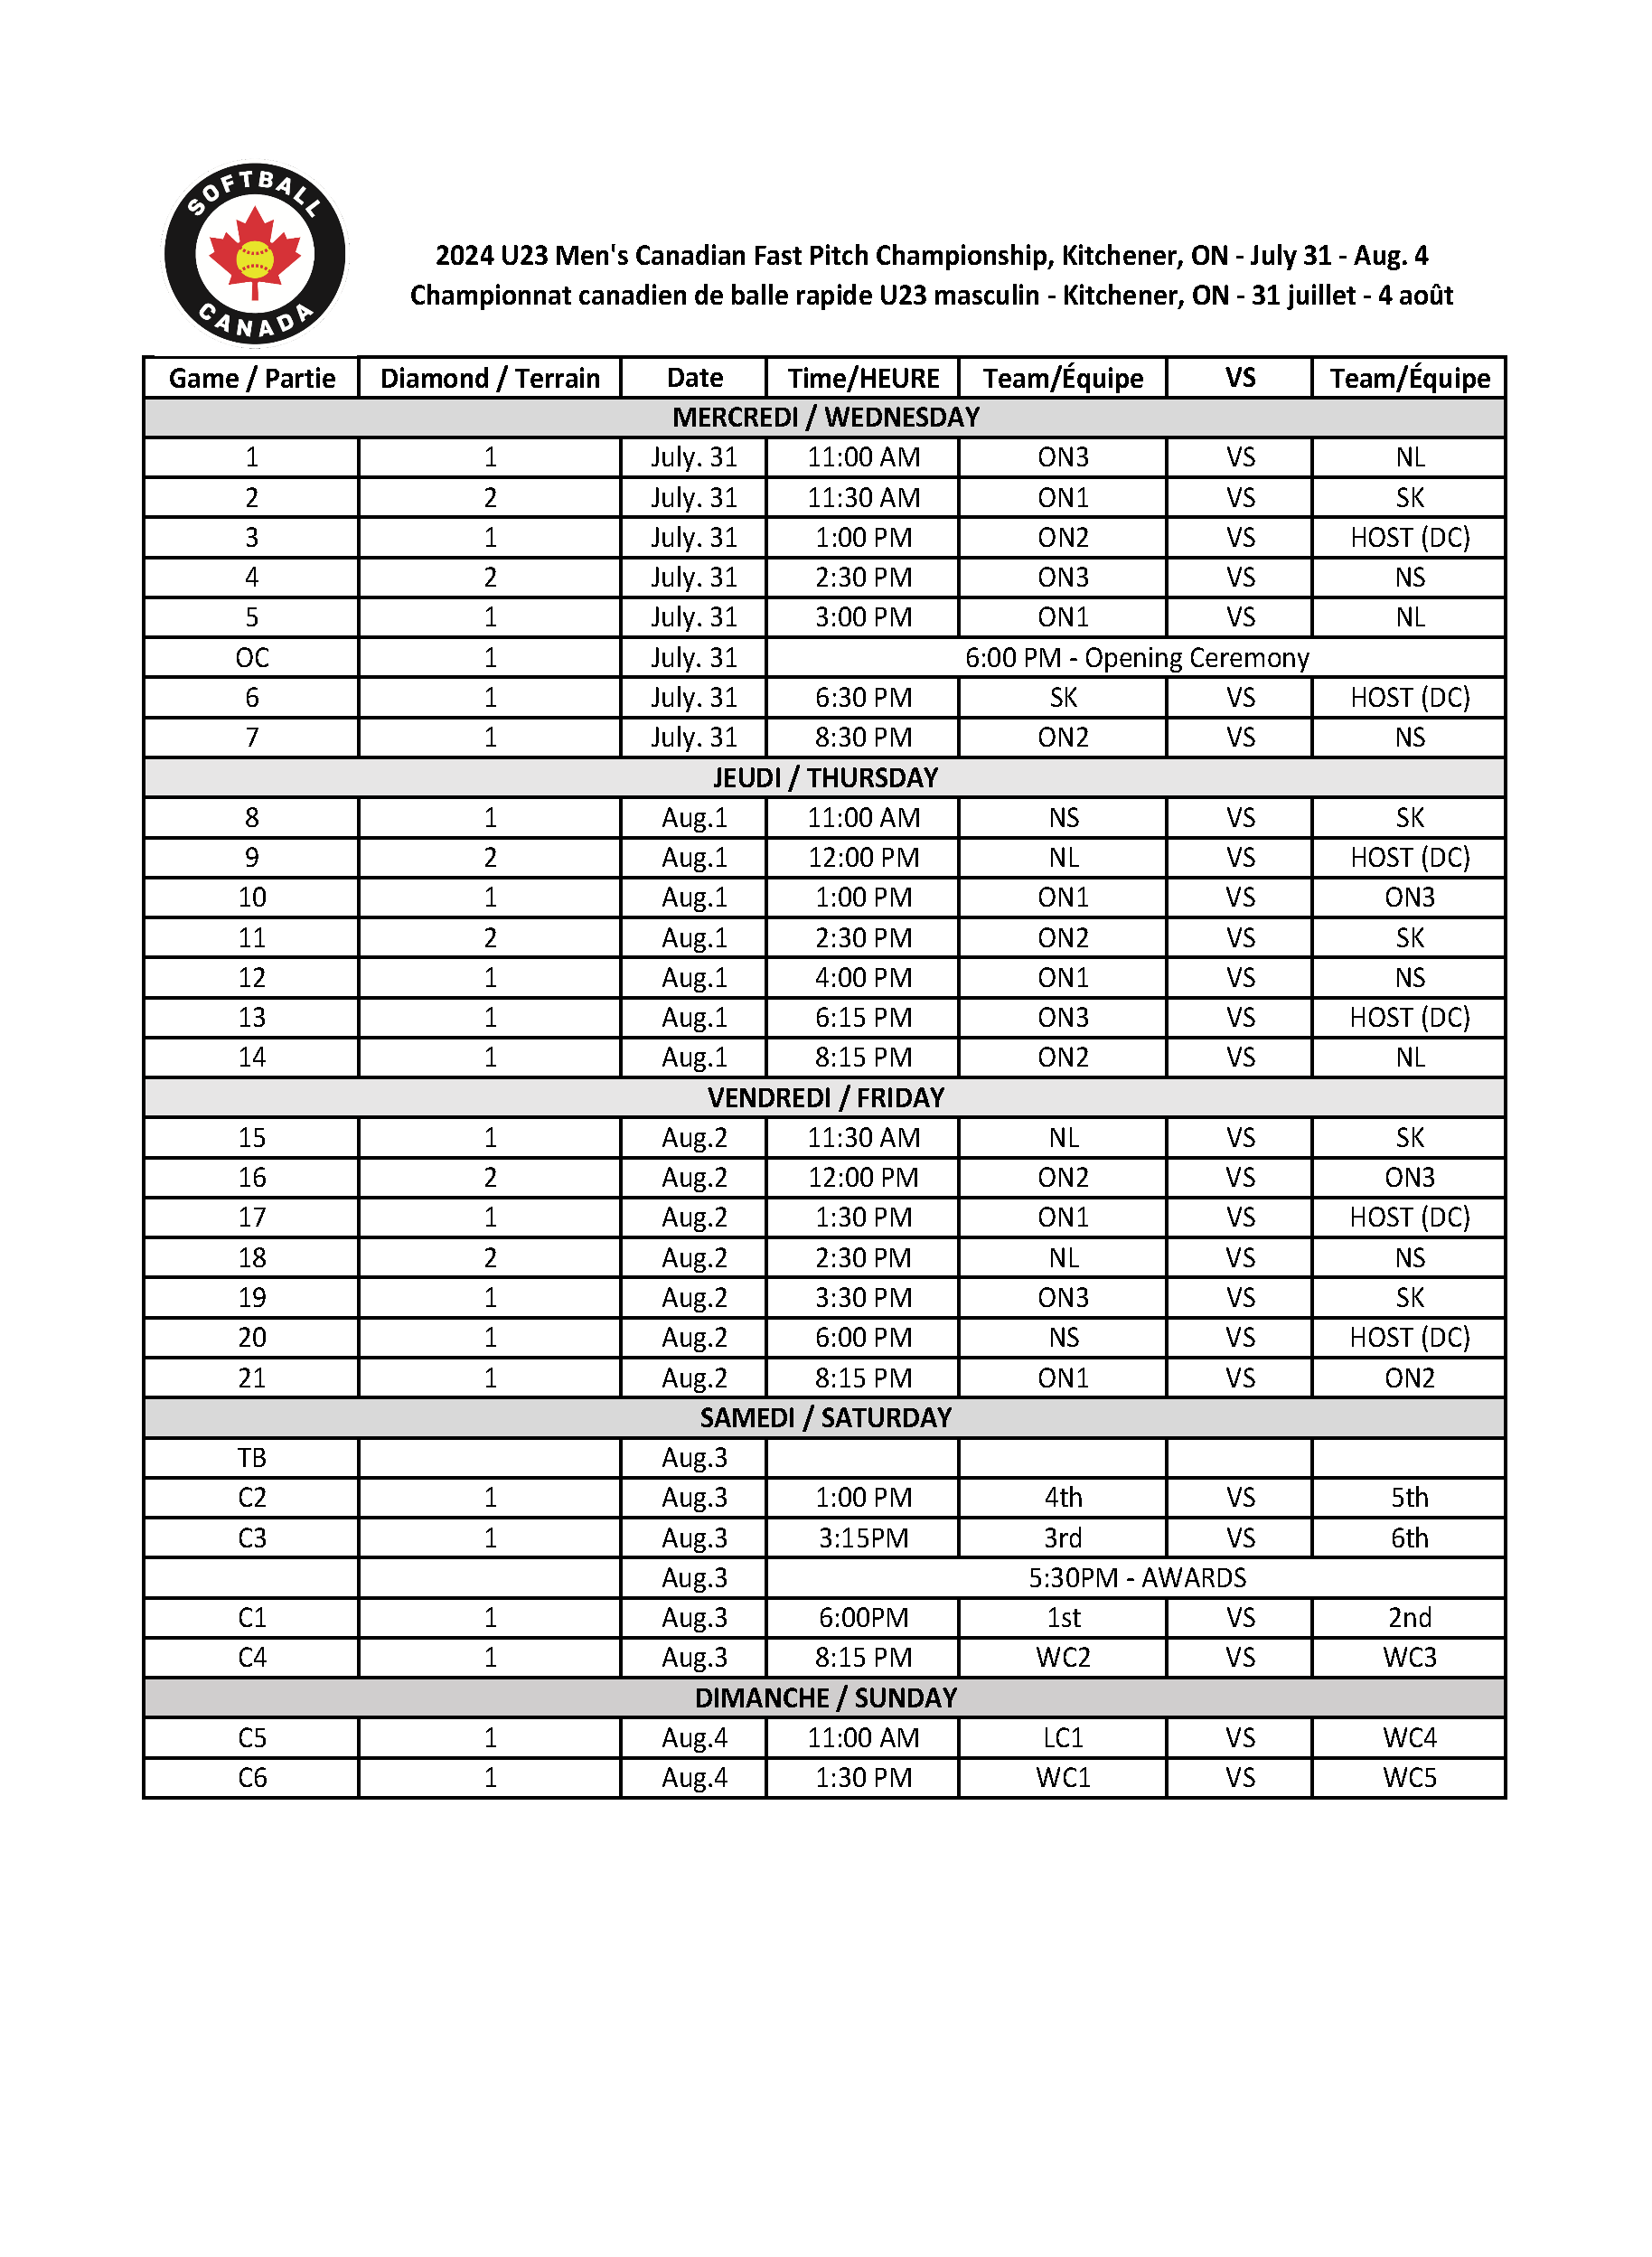 2024 U23 Men CC Schedule